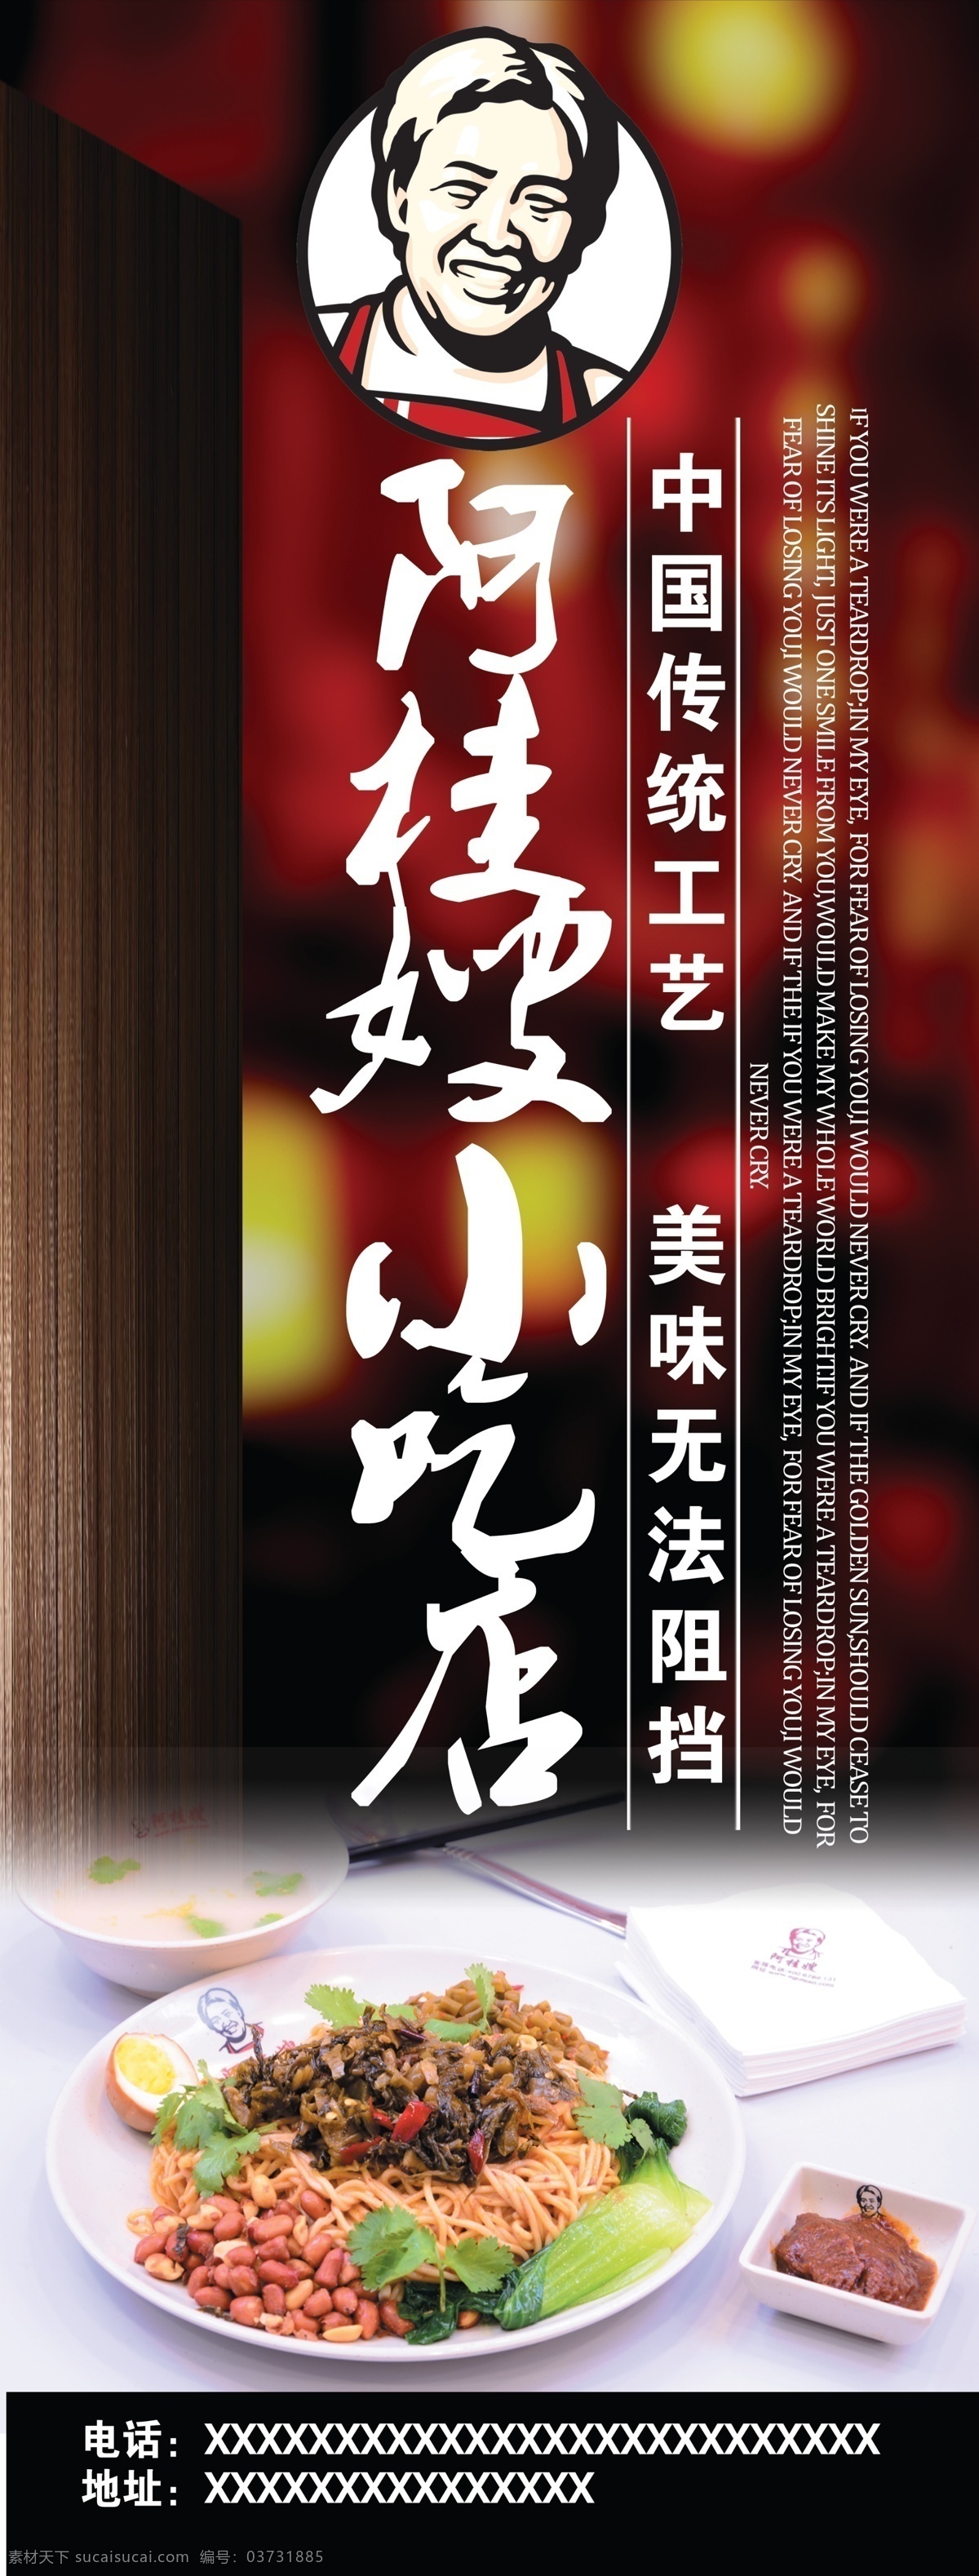 阿桂 嫂 宣传海报 阿桂嫂 小吃 中国传统工艺 美味 内容均可修改